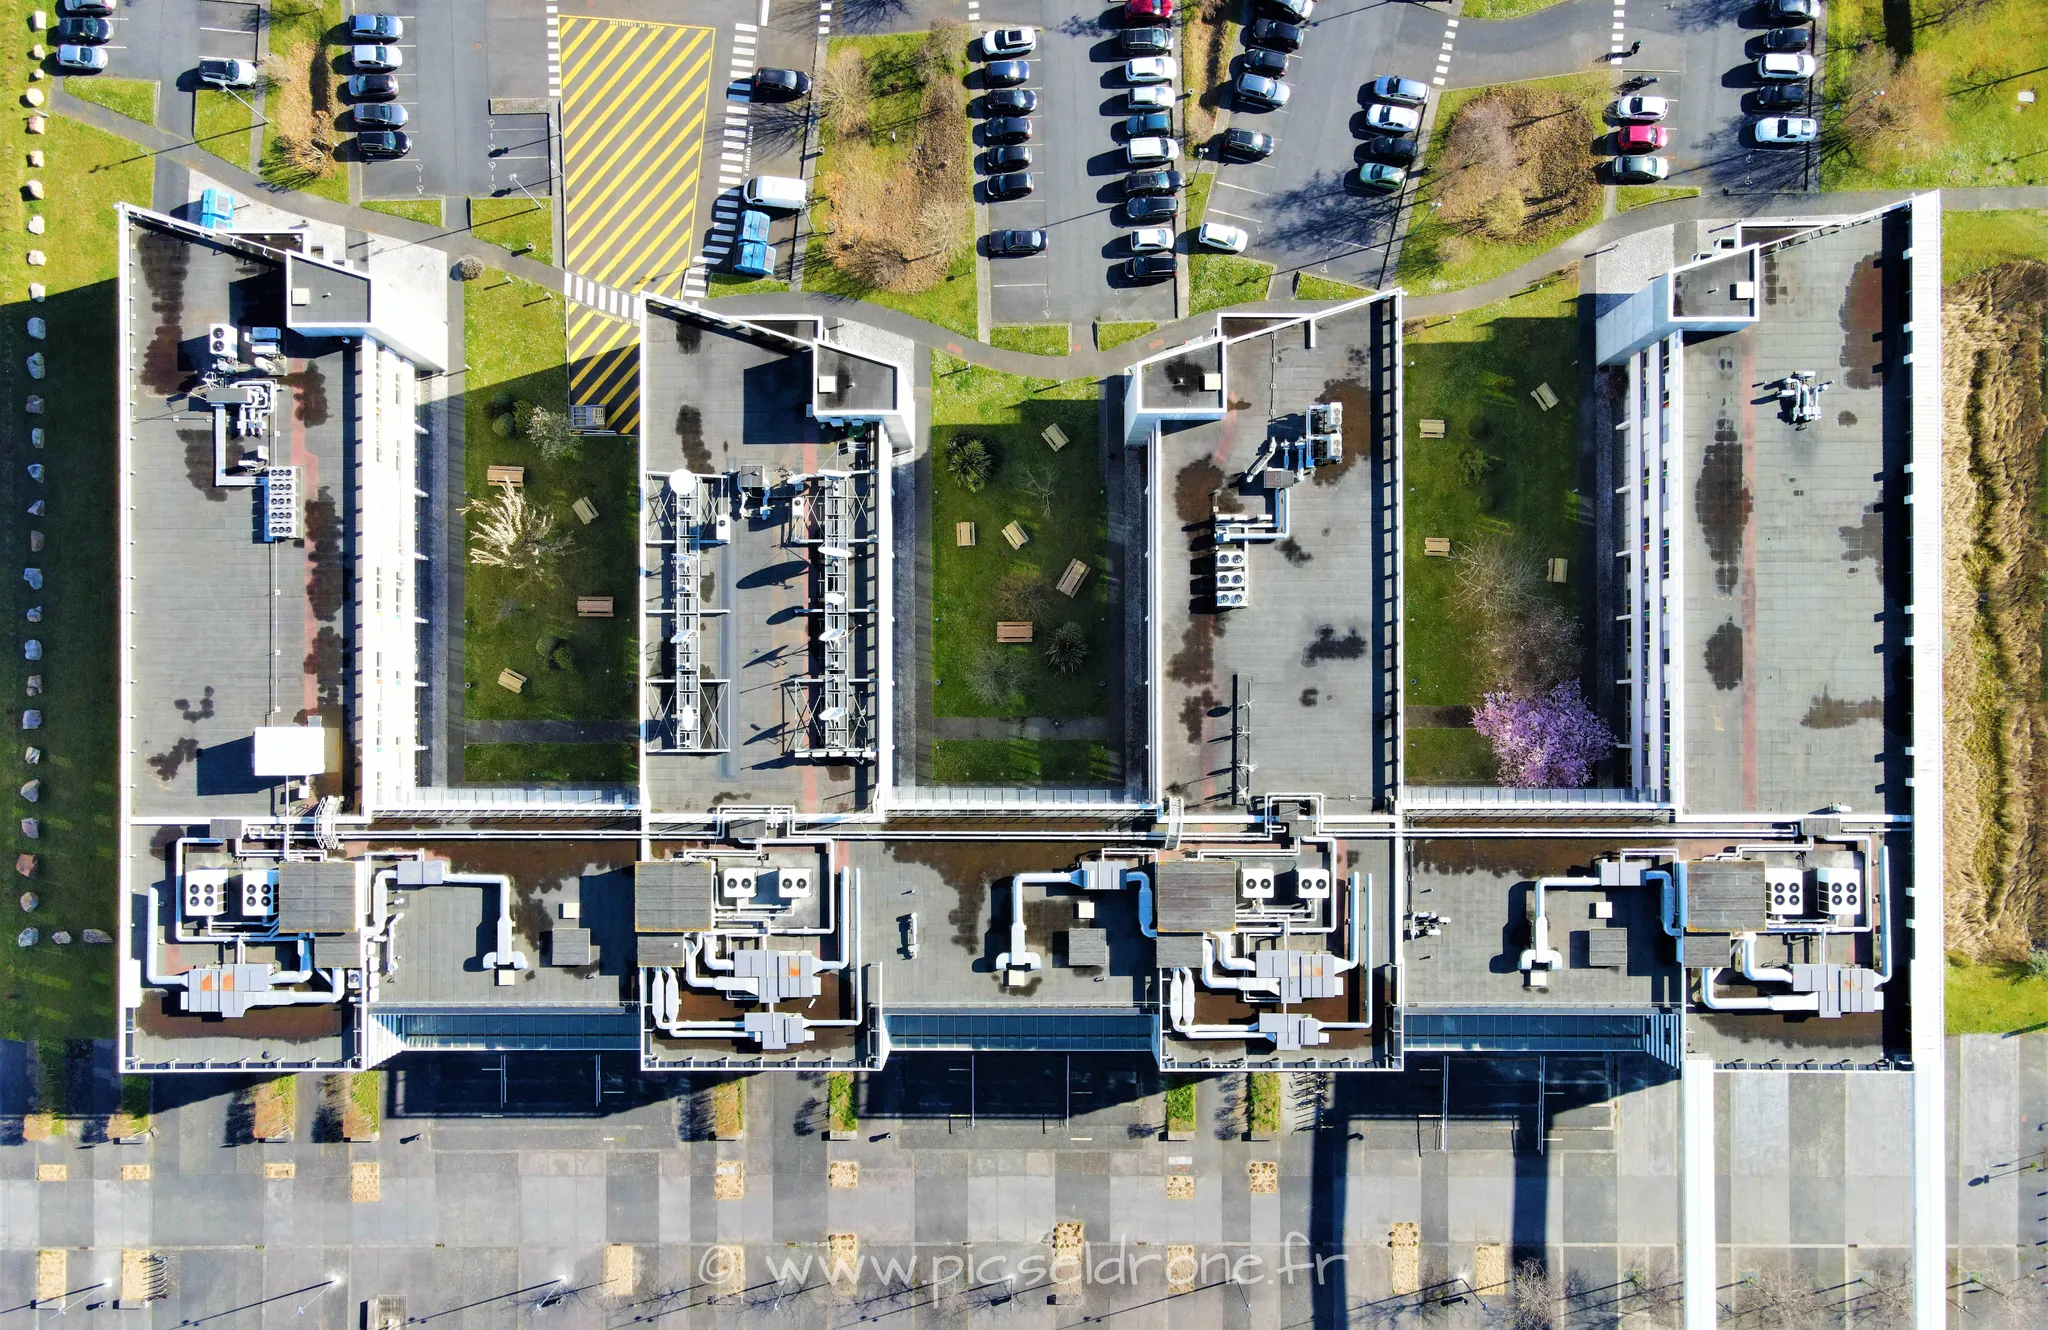 Prise de vue aérienne, photo aérienne d'un immeuble de bureaux, télépilote drone, pilote drone, PICSEL DRONE, CAEN